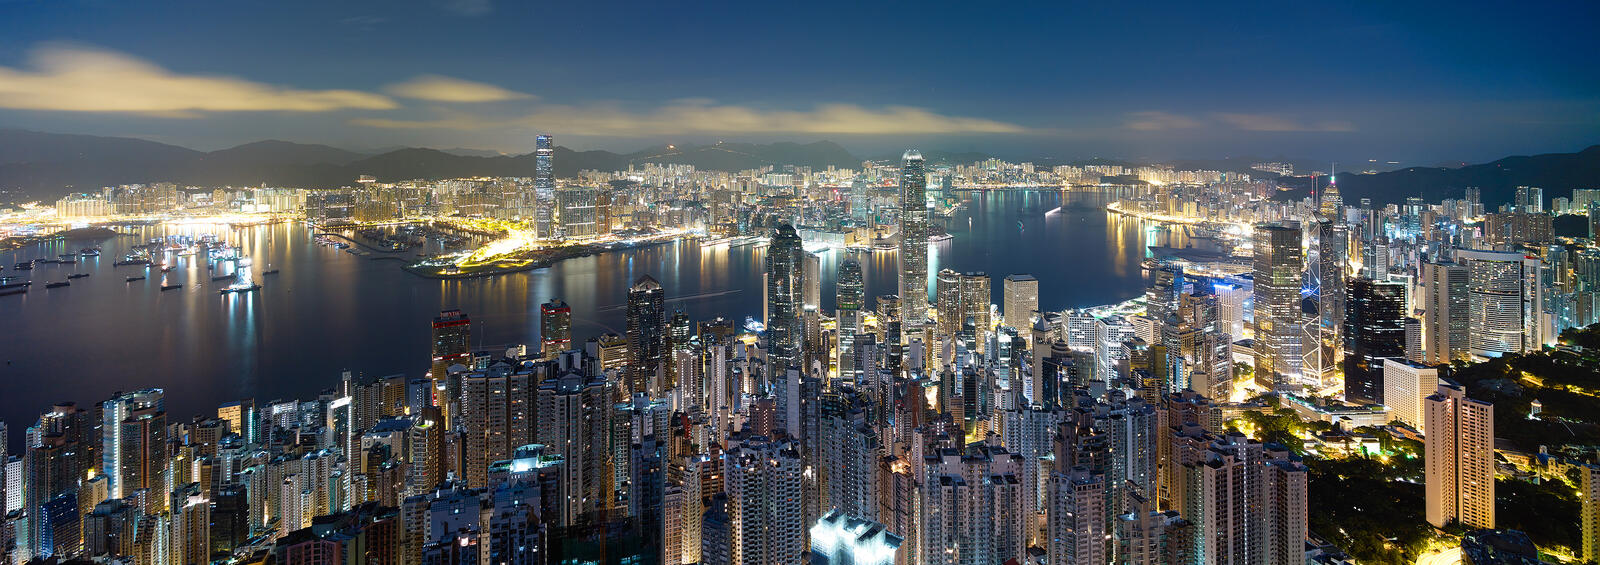 Wallpapers Hong Kong China night city on the desktop